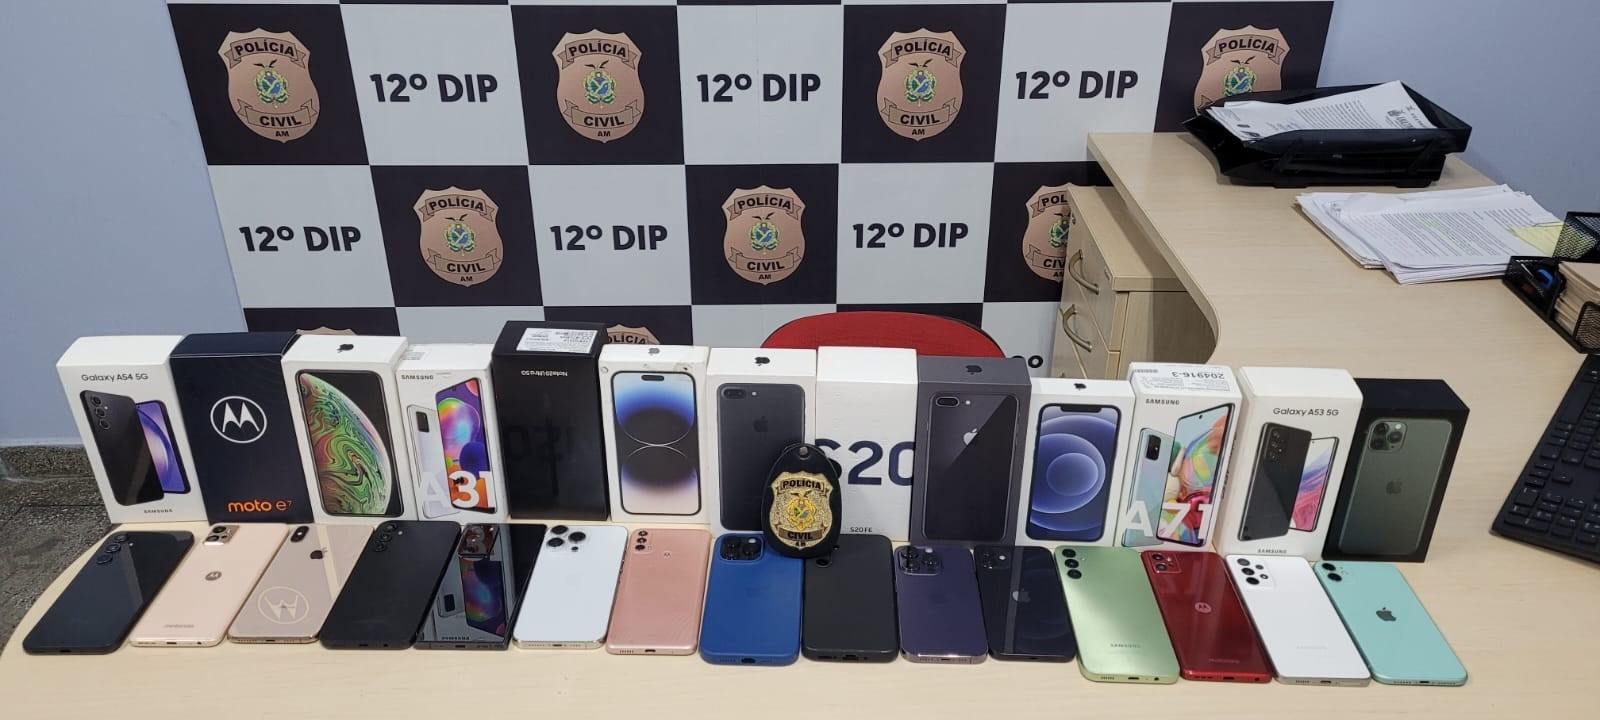 Polícia devolve 15 aparelhos celulares recuperados em operação em Manaus